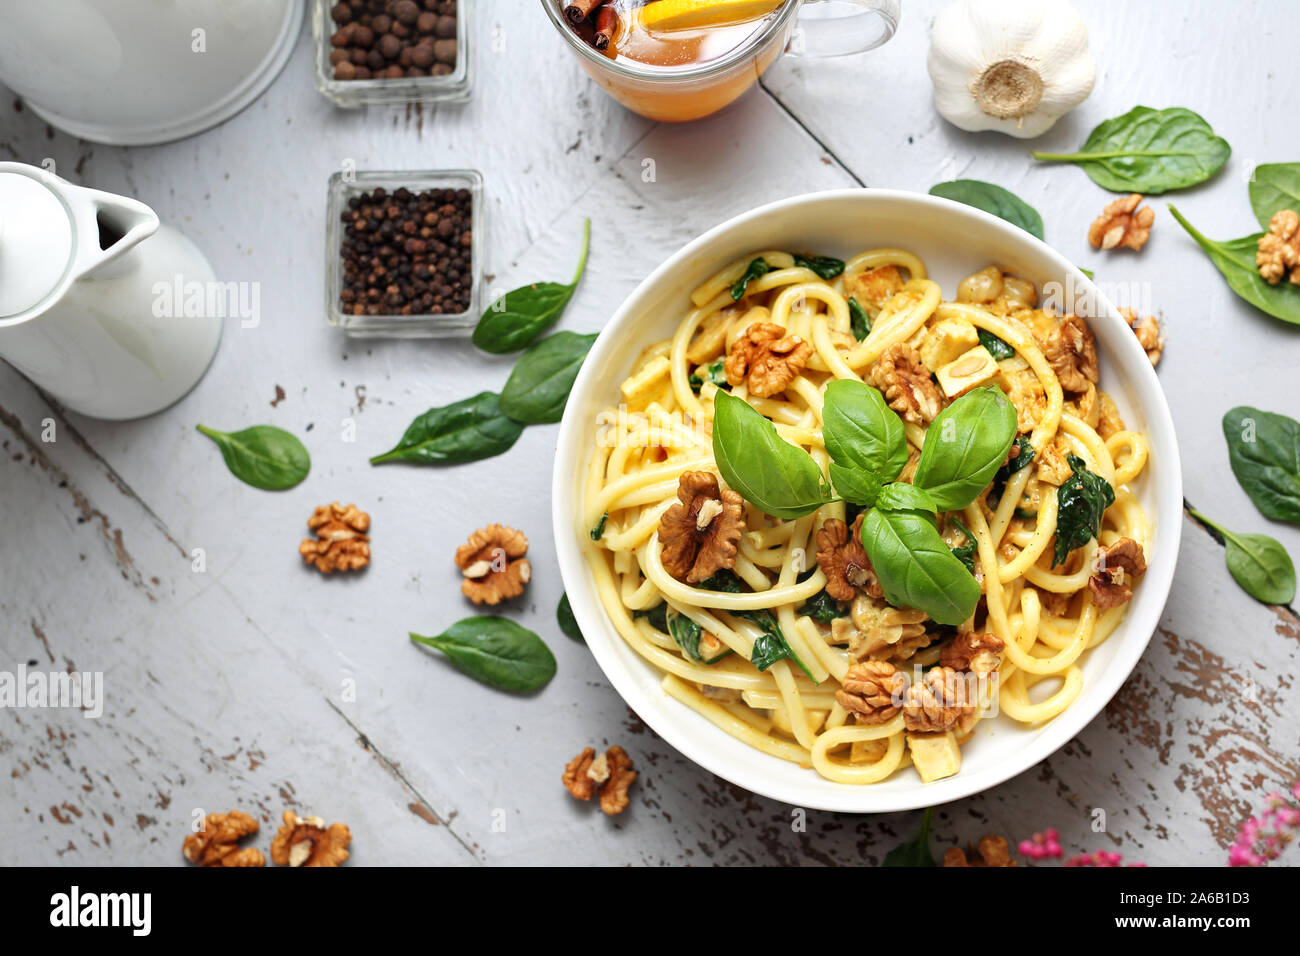 Pasta bucatini in una salsa alla panna con spinaci freschi, aglio, noci Foto Stock